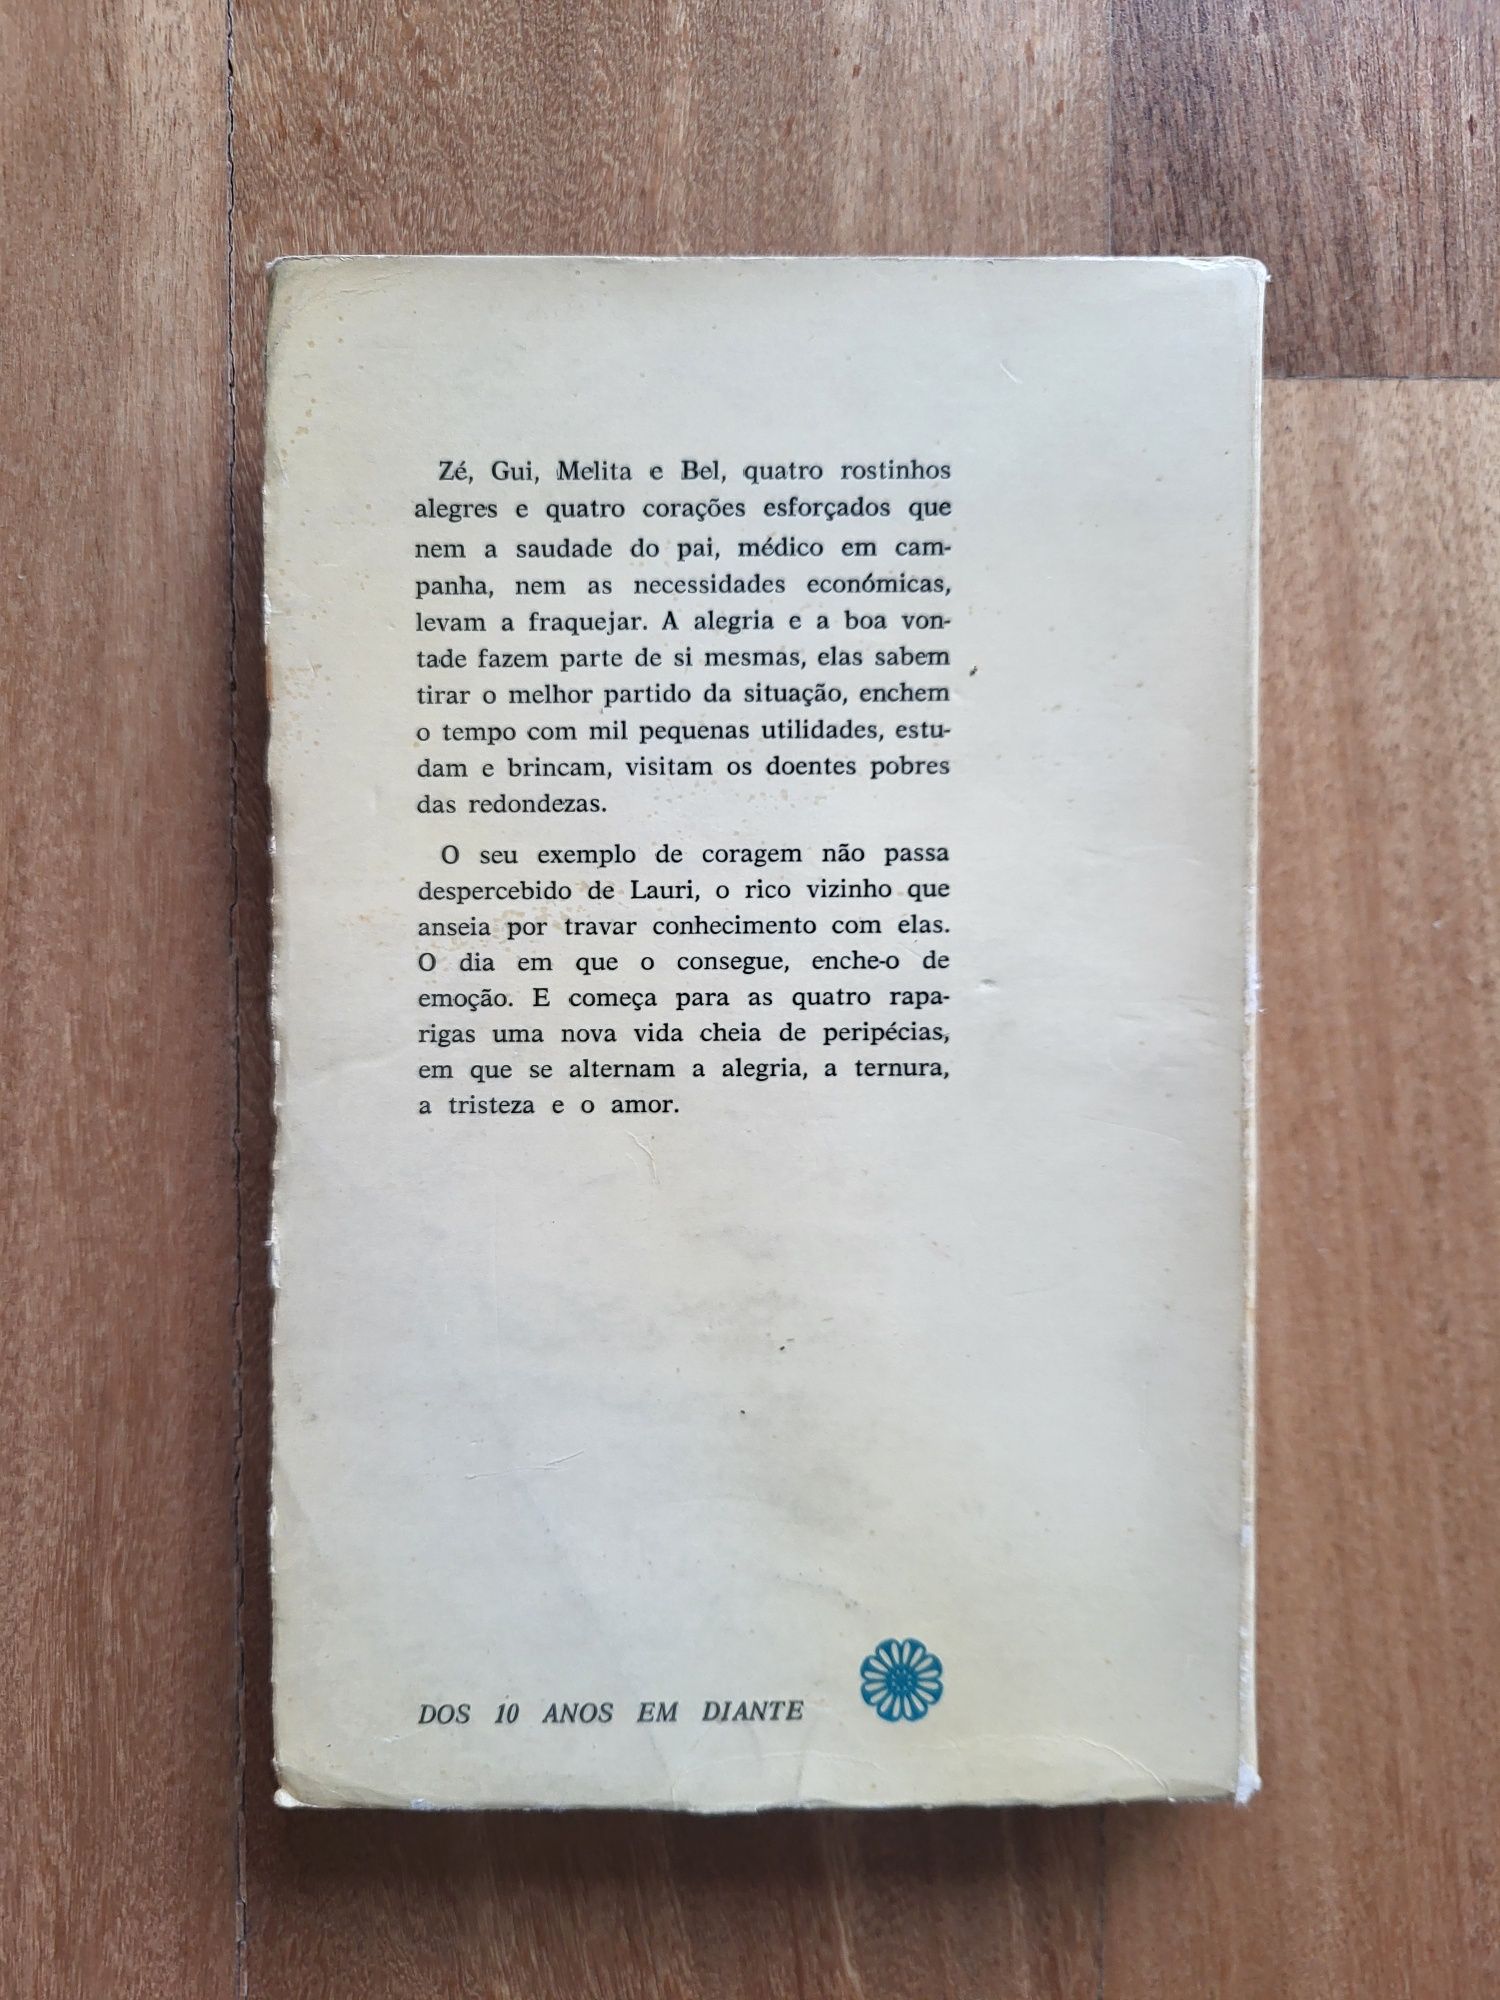 Livro | "Mulherzinhas", Louisa May Alcott - Coleção (8a Edição)